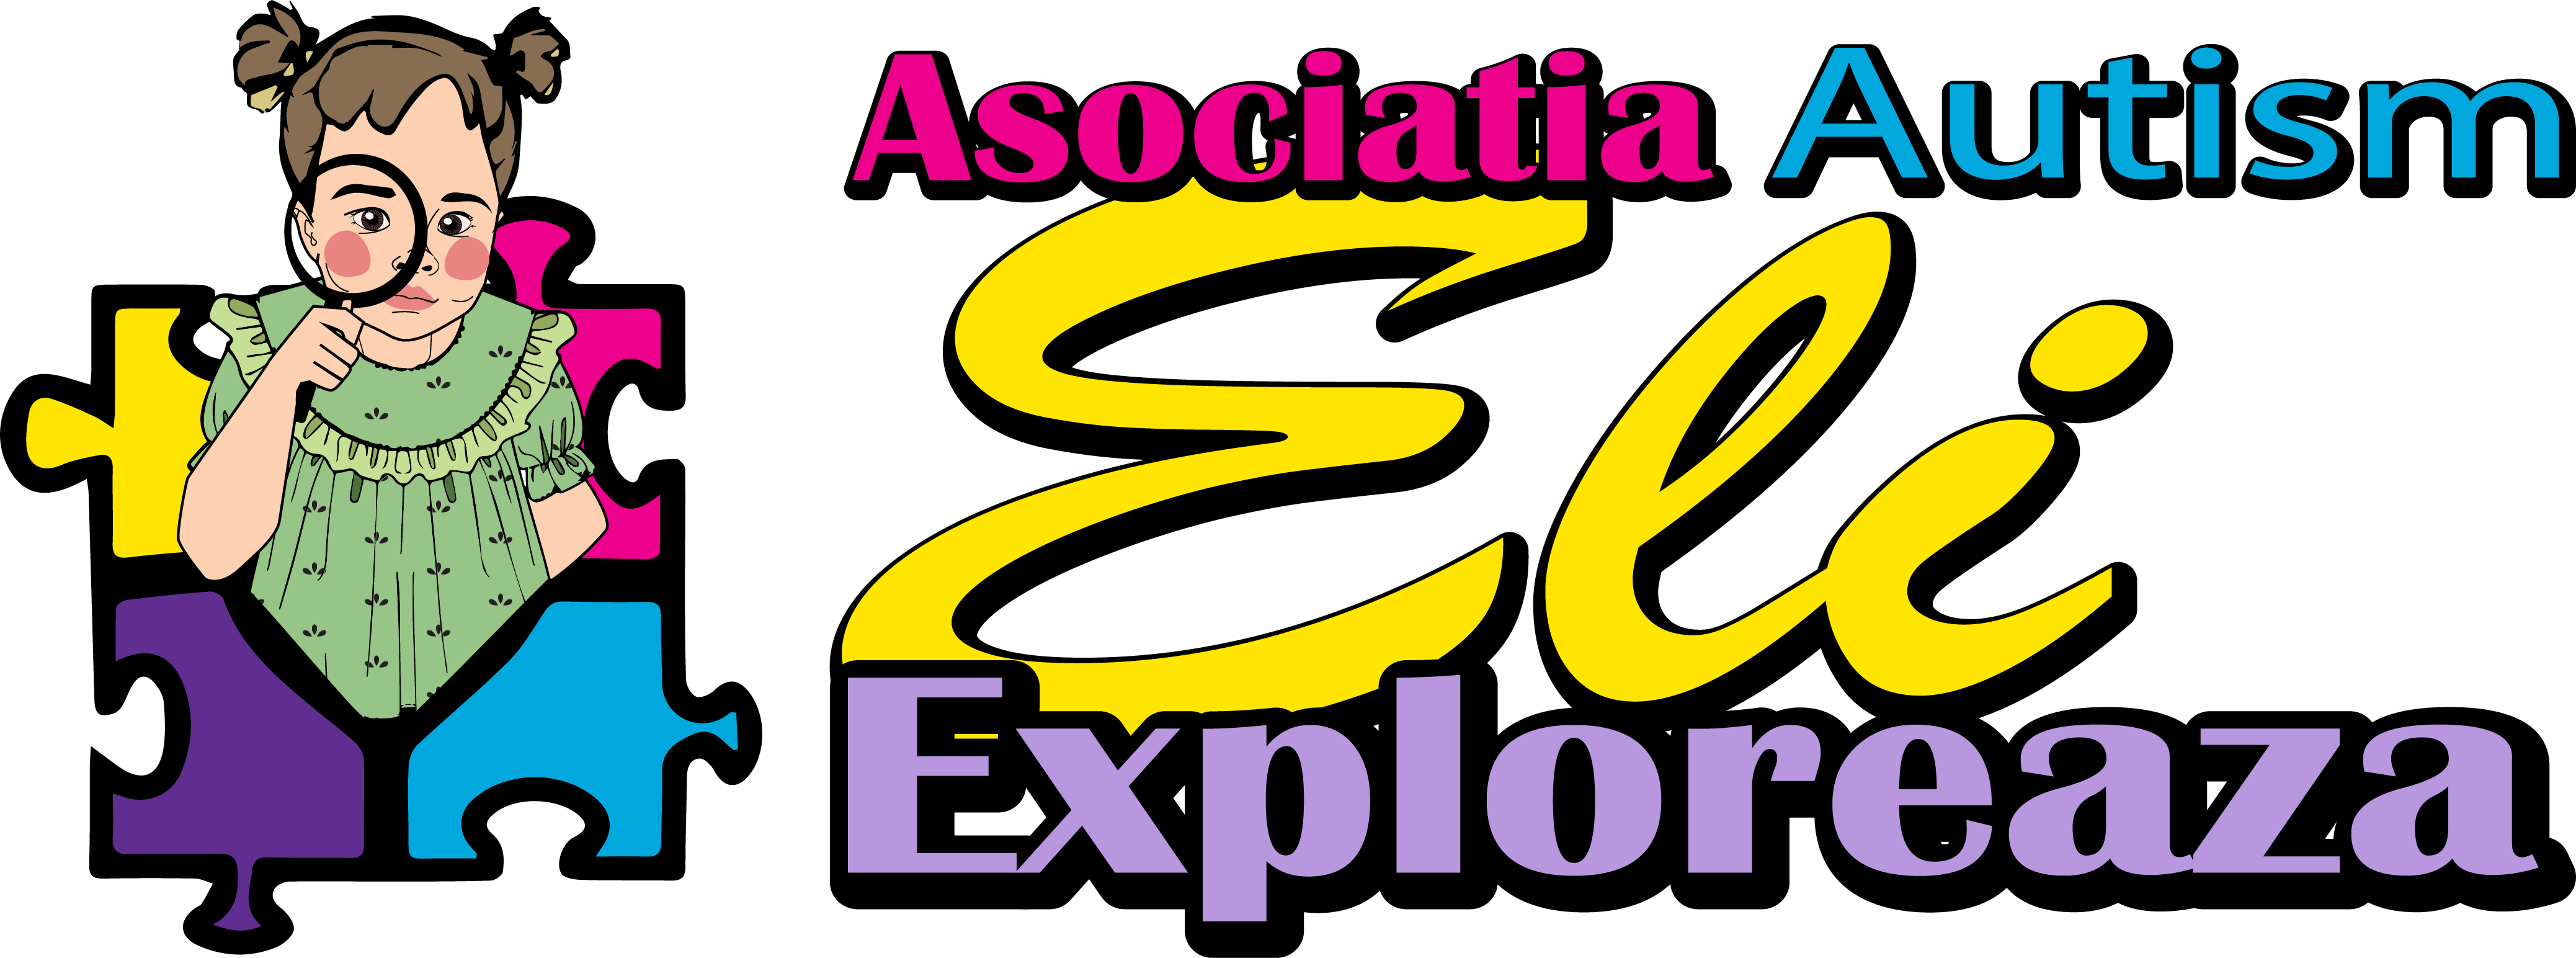 Asociatia Autism Eli Exploreaza logo